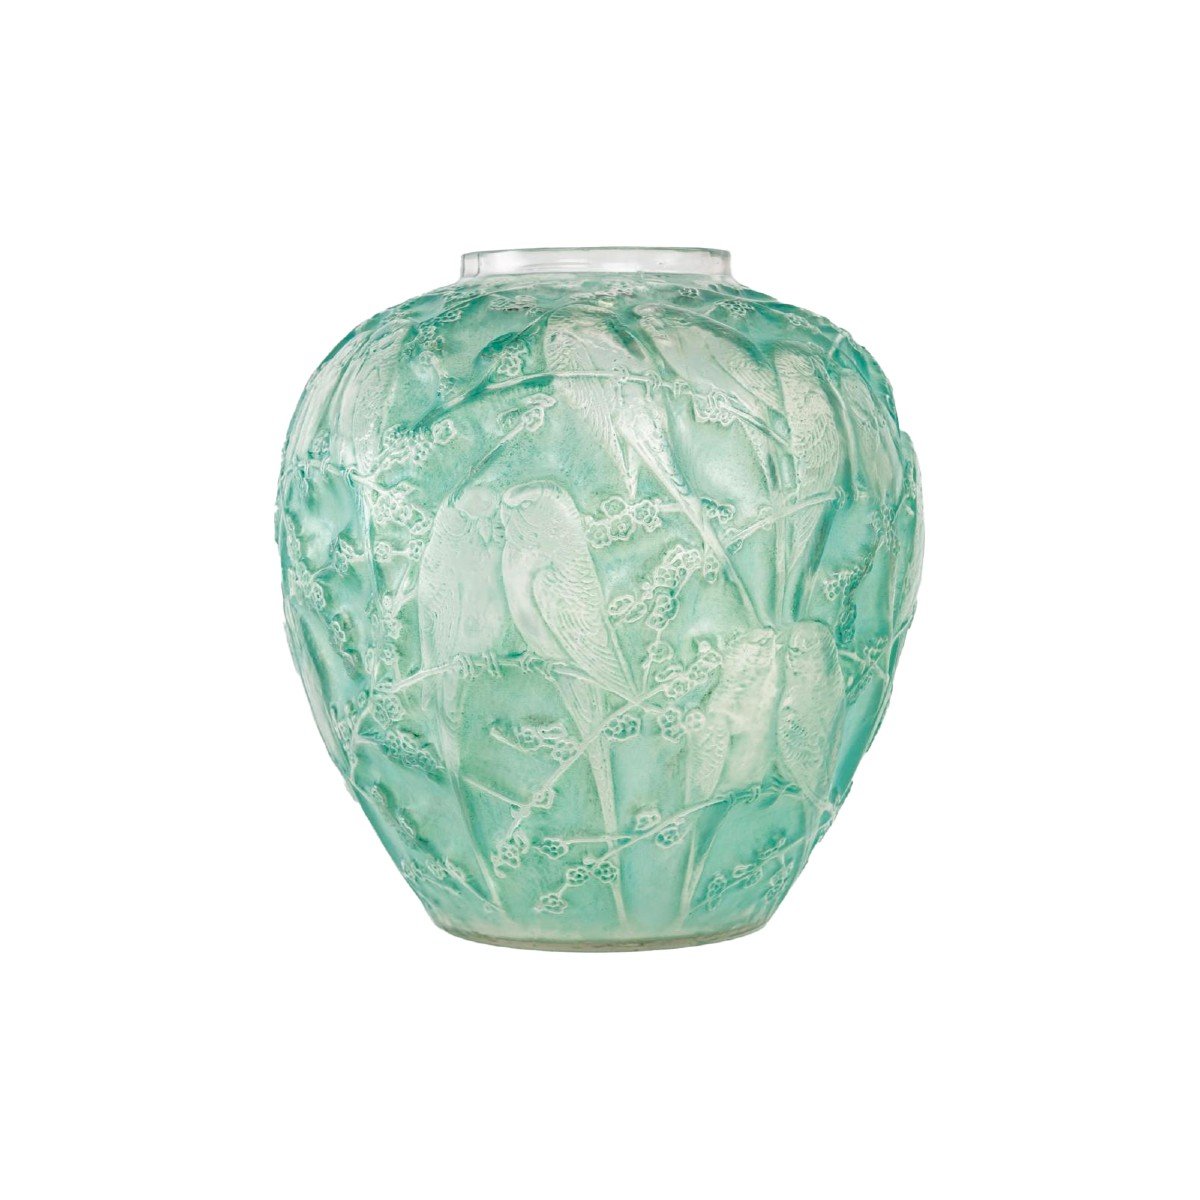 René Lalique: Vase "parakeets"